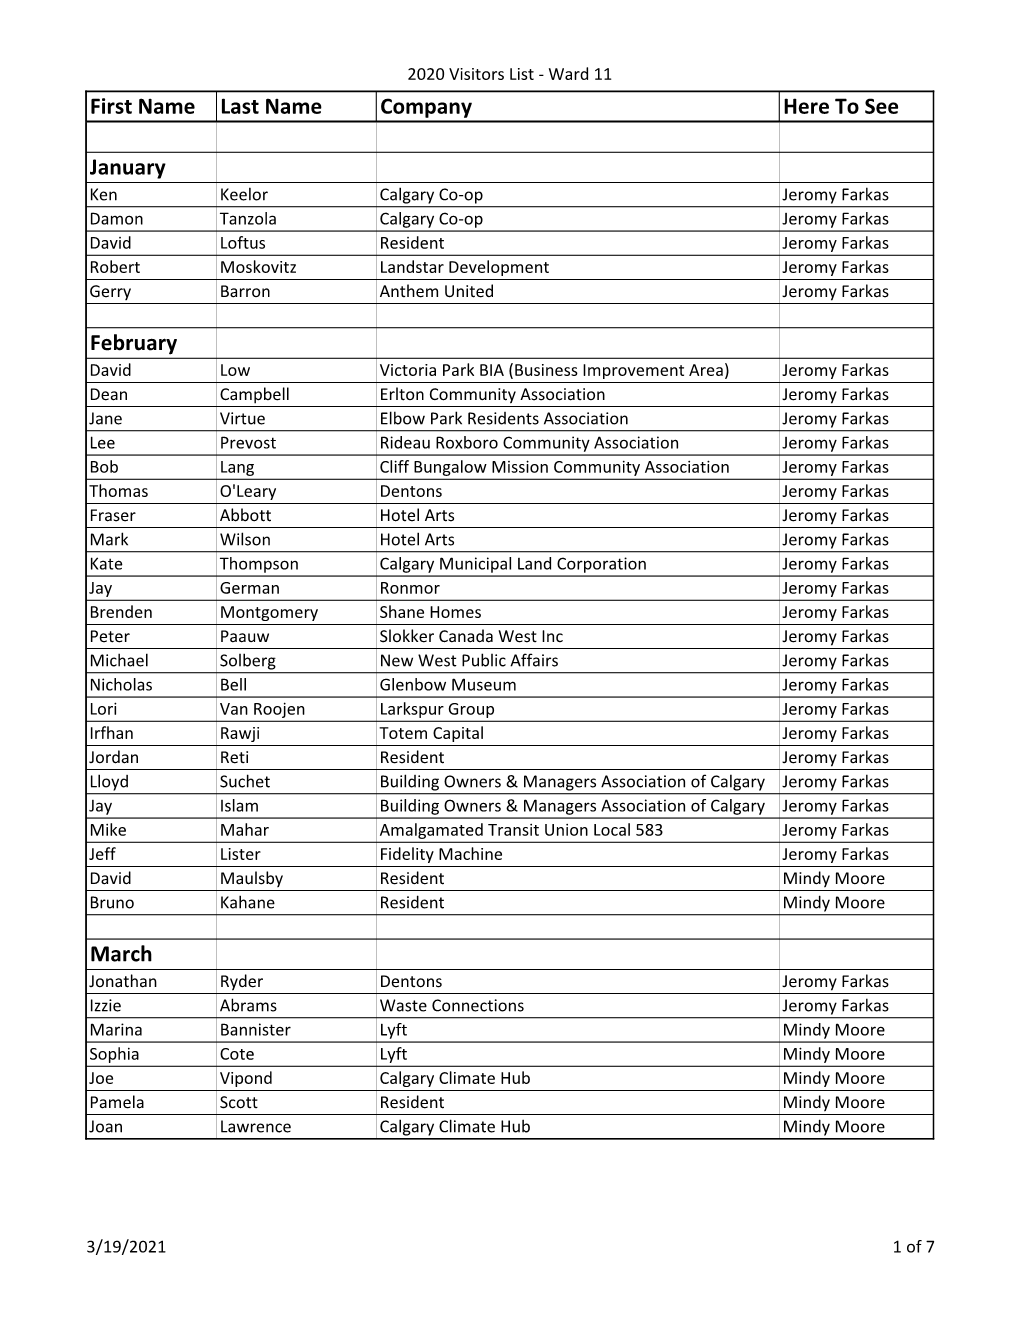 Ward 11 Councillor Visitors List 2020